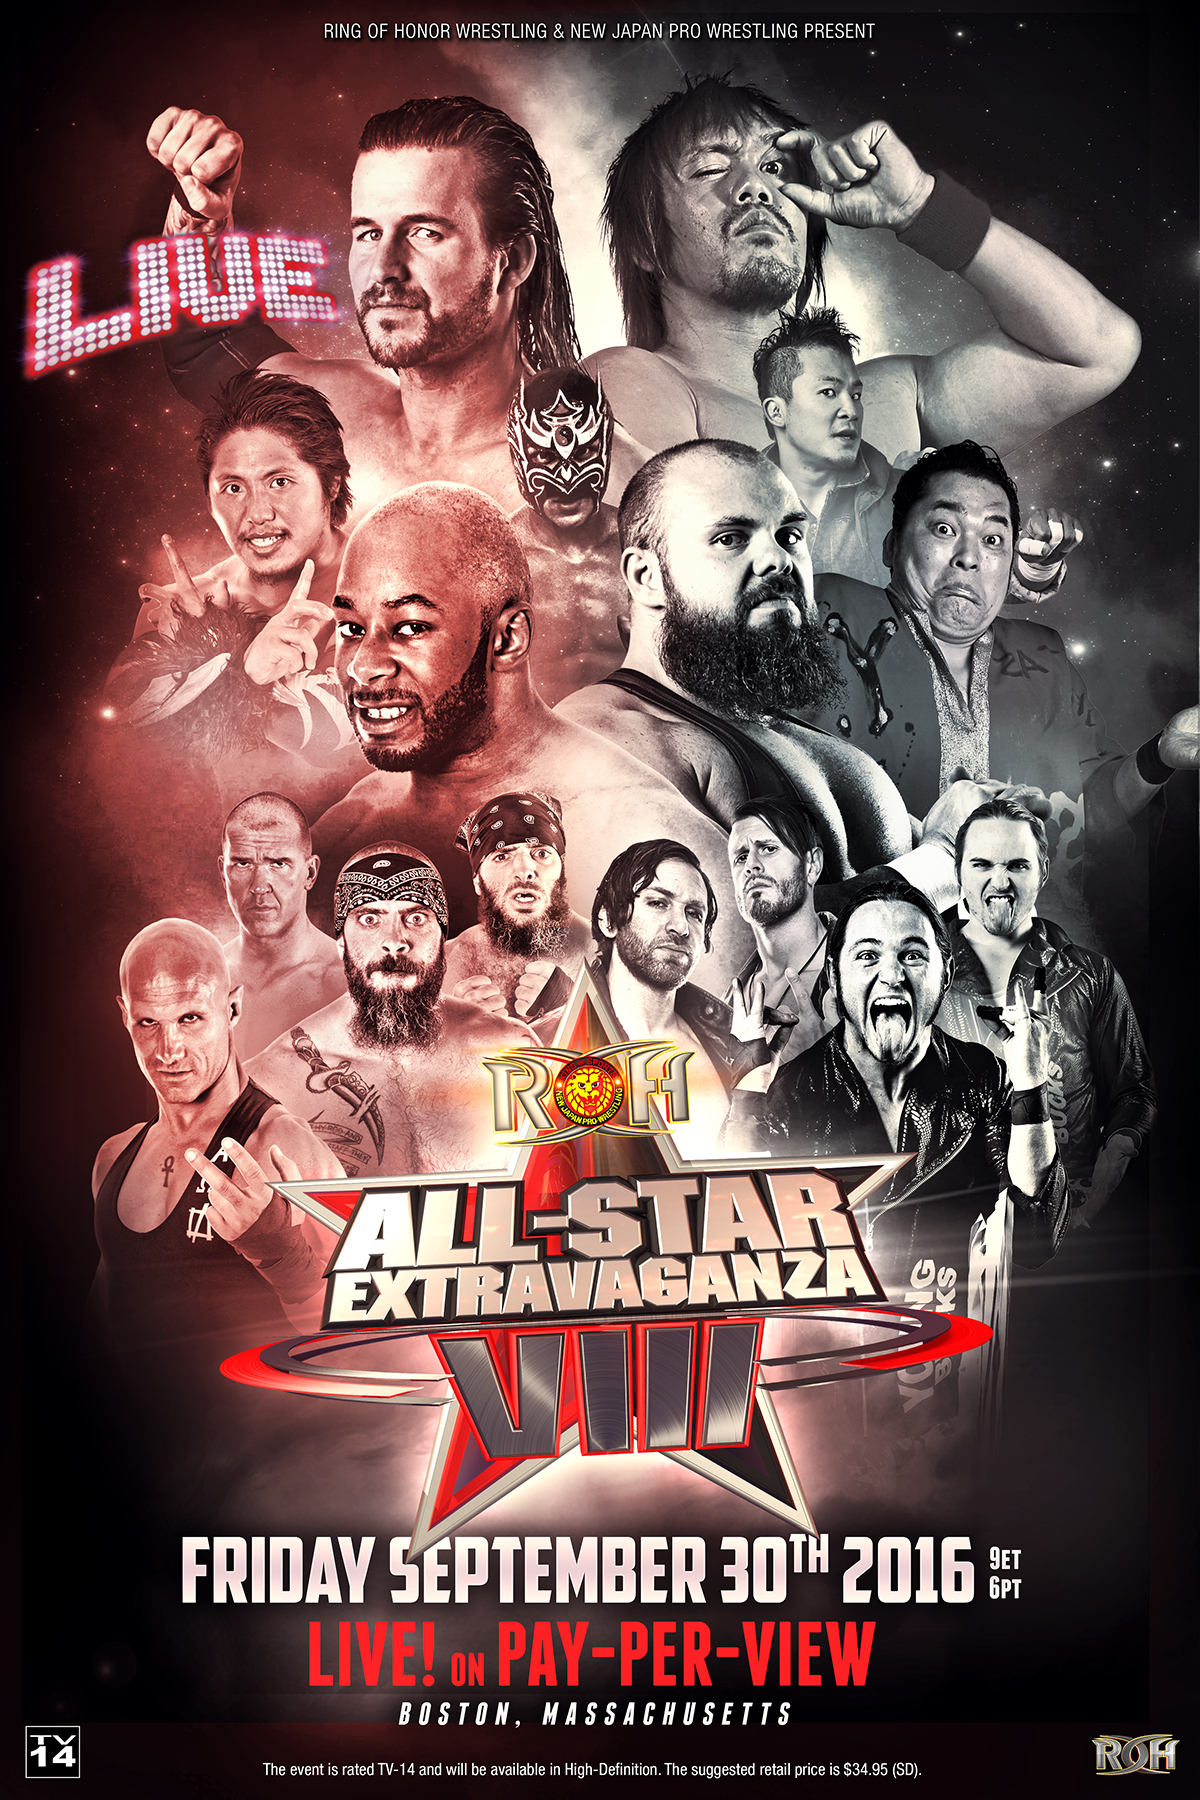 9/30 ROH AllStar Extravaganza VIII PPV Preview Adam Cole vs. Michael